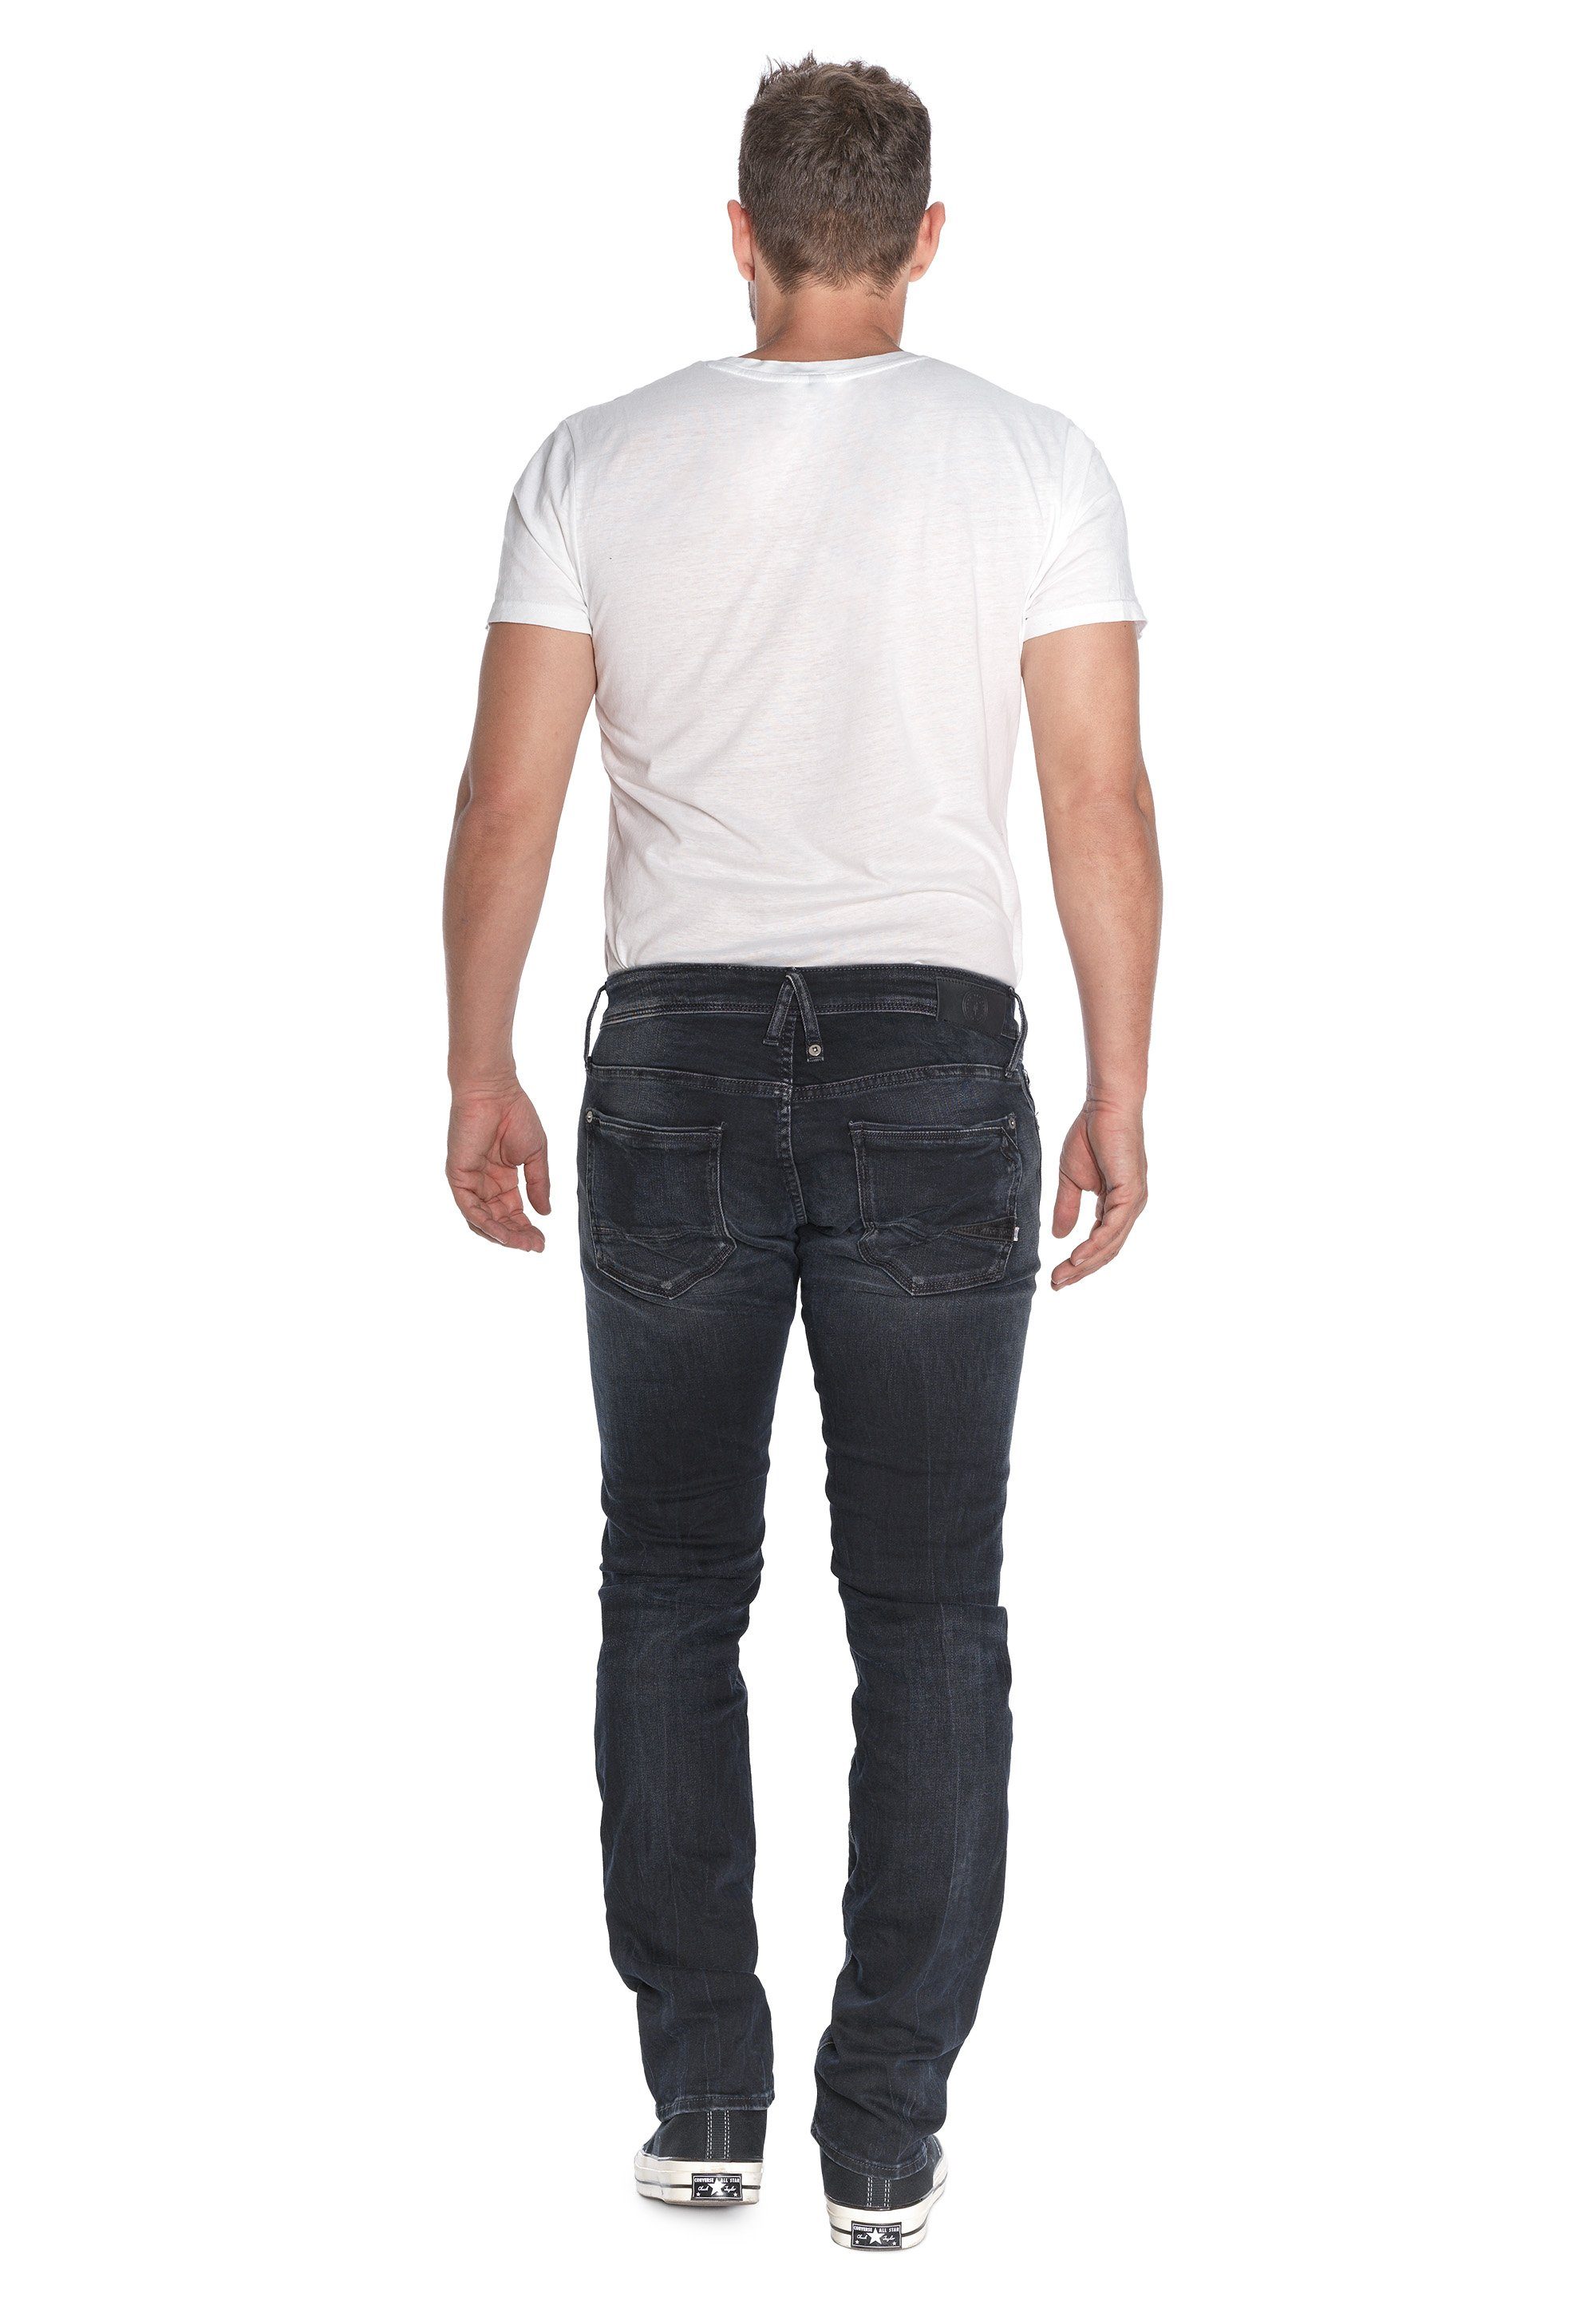 Le Temps 5-Pocket-Design Cerises im Bequeme klassischen Jeans Des